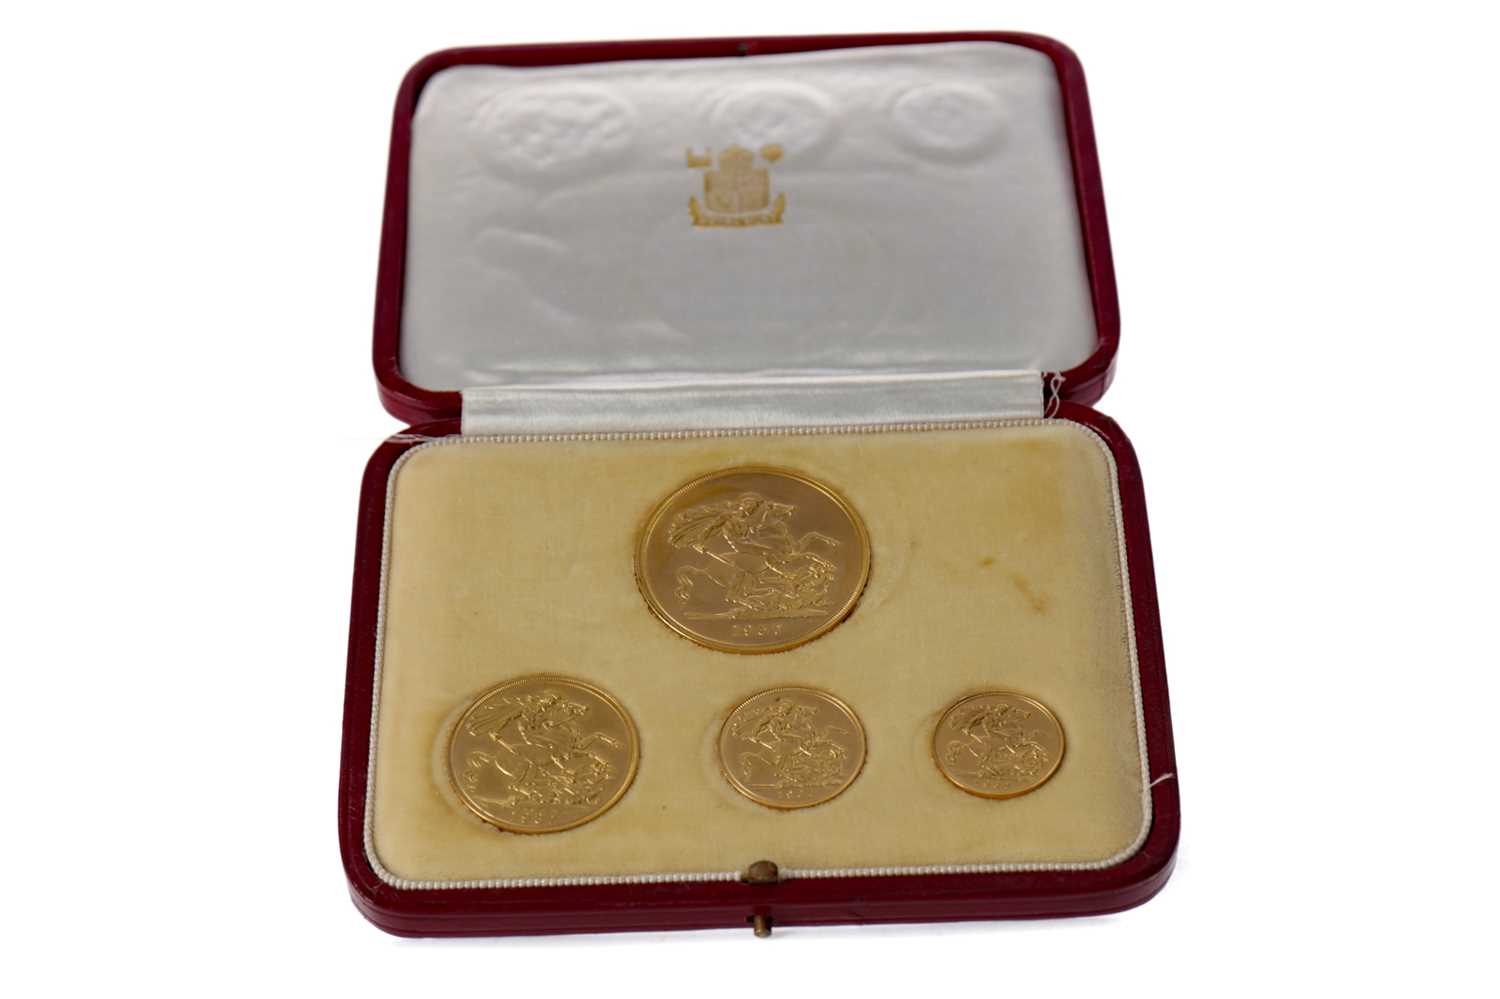 Lot 5 - A GEORGE VI 1937 GOLD FOUR COIN SPECIMEN SET